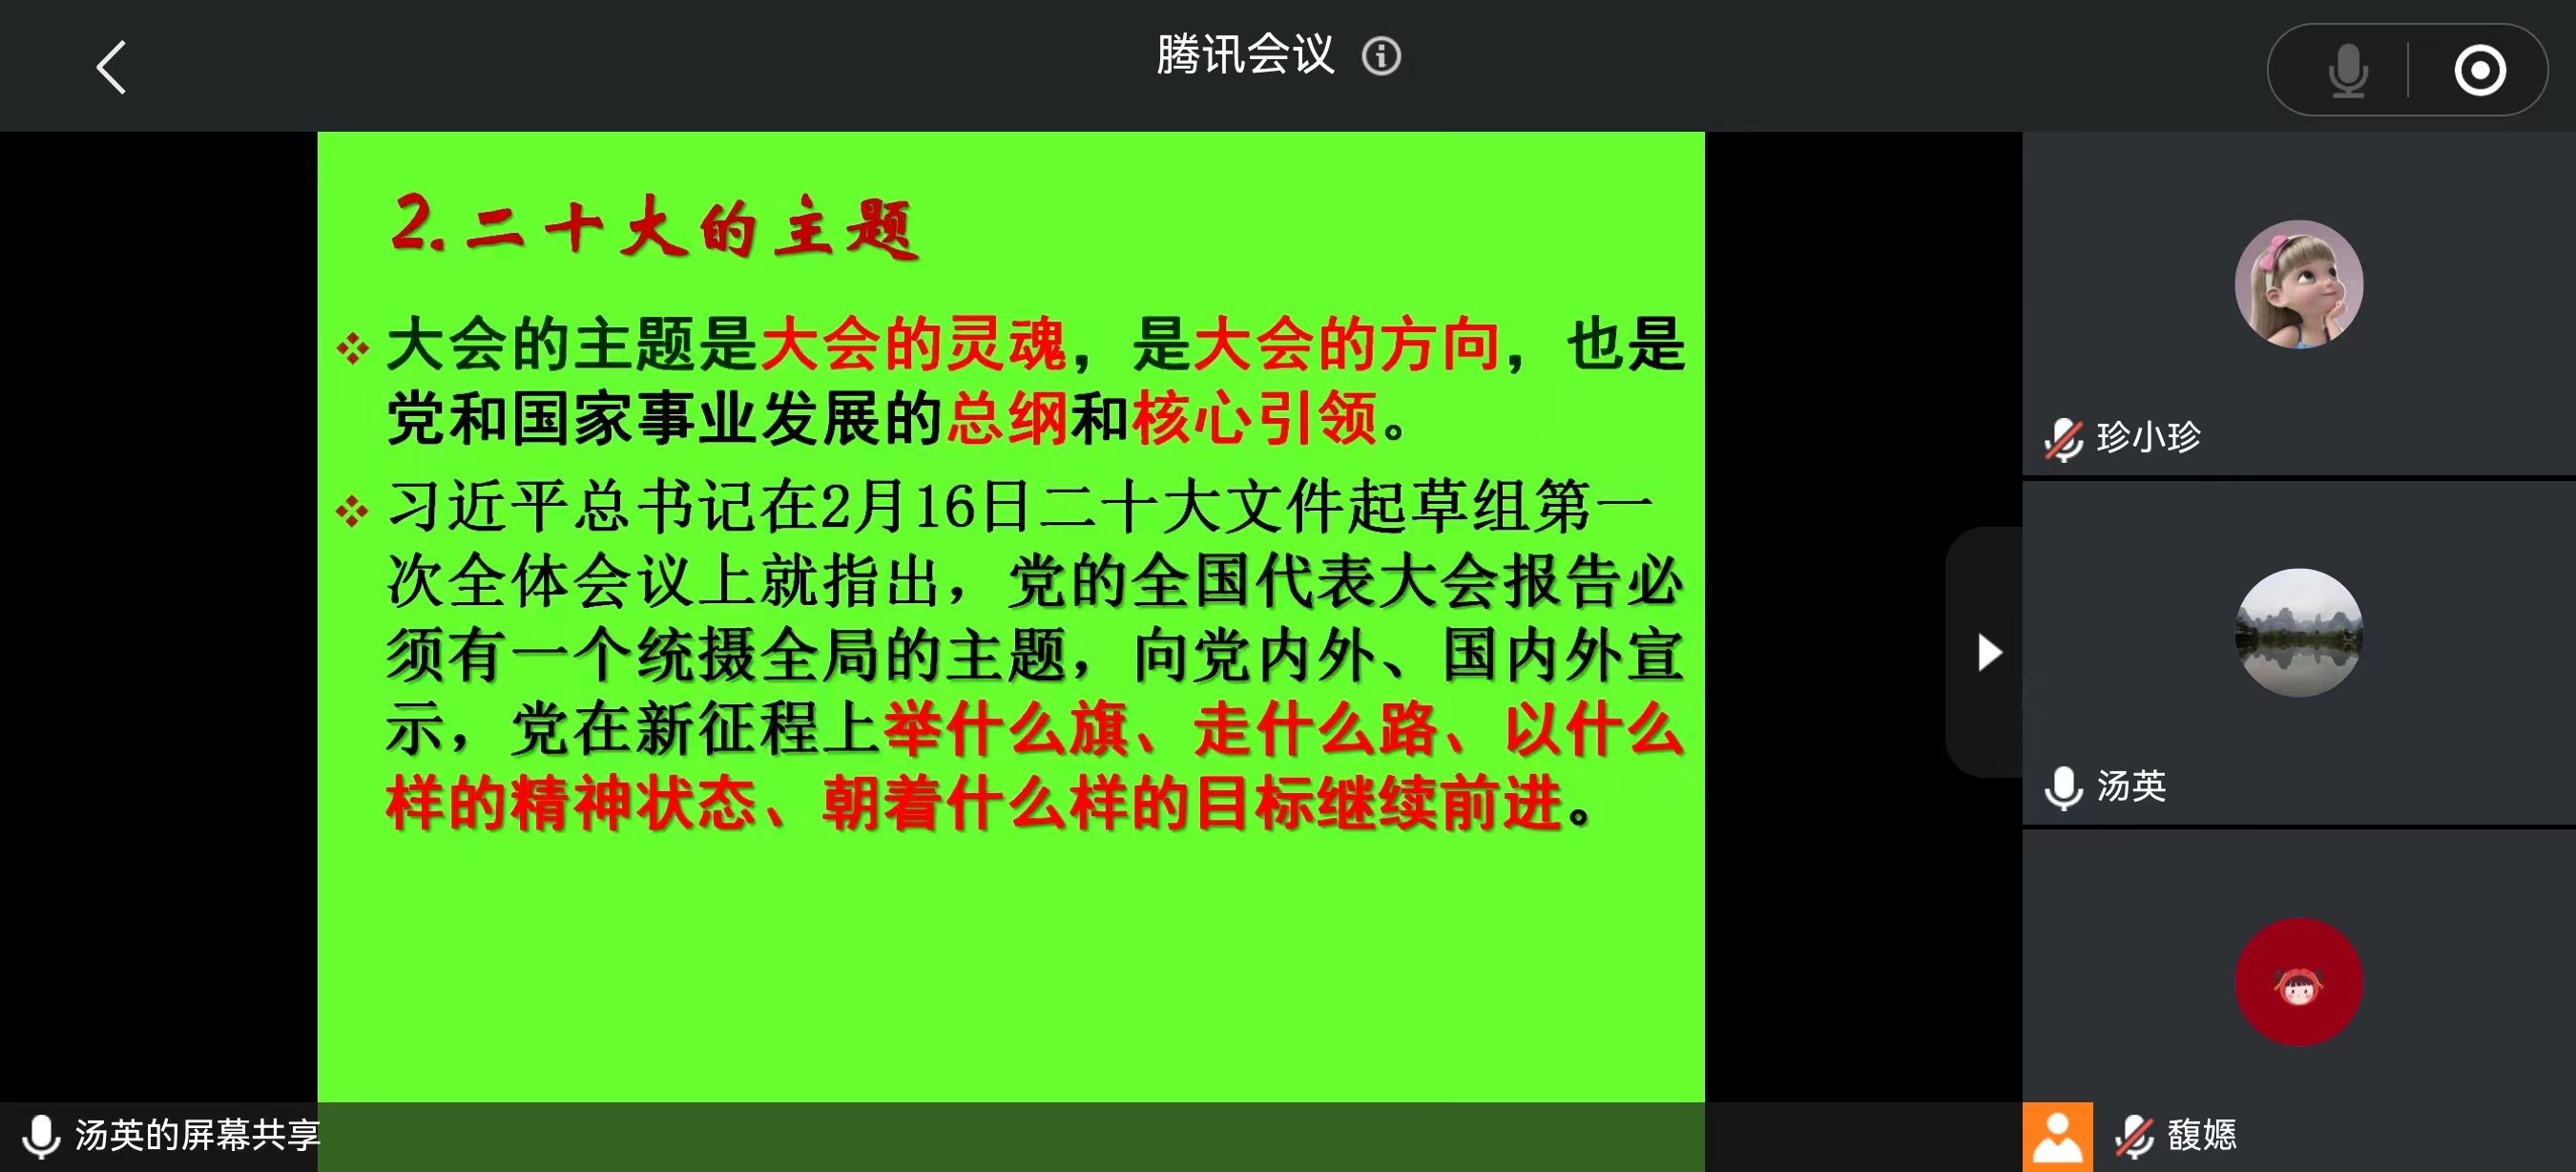 【学习二十大 奋进新征程】市九院邀请庞江平教授宣讲党的二十大精神